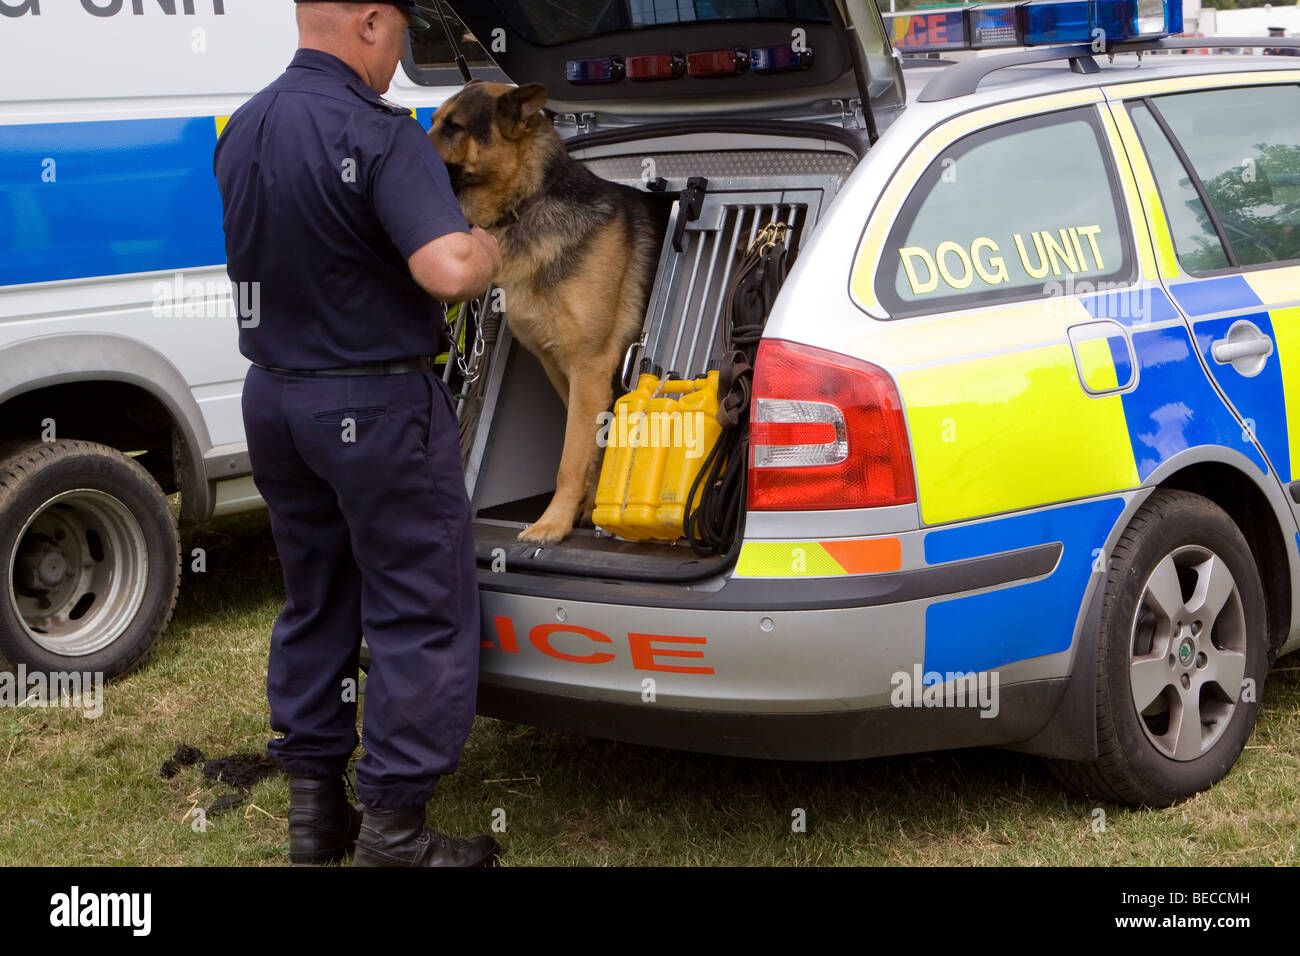 Police Dog Unit Stock Photo